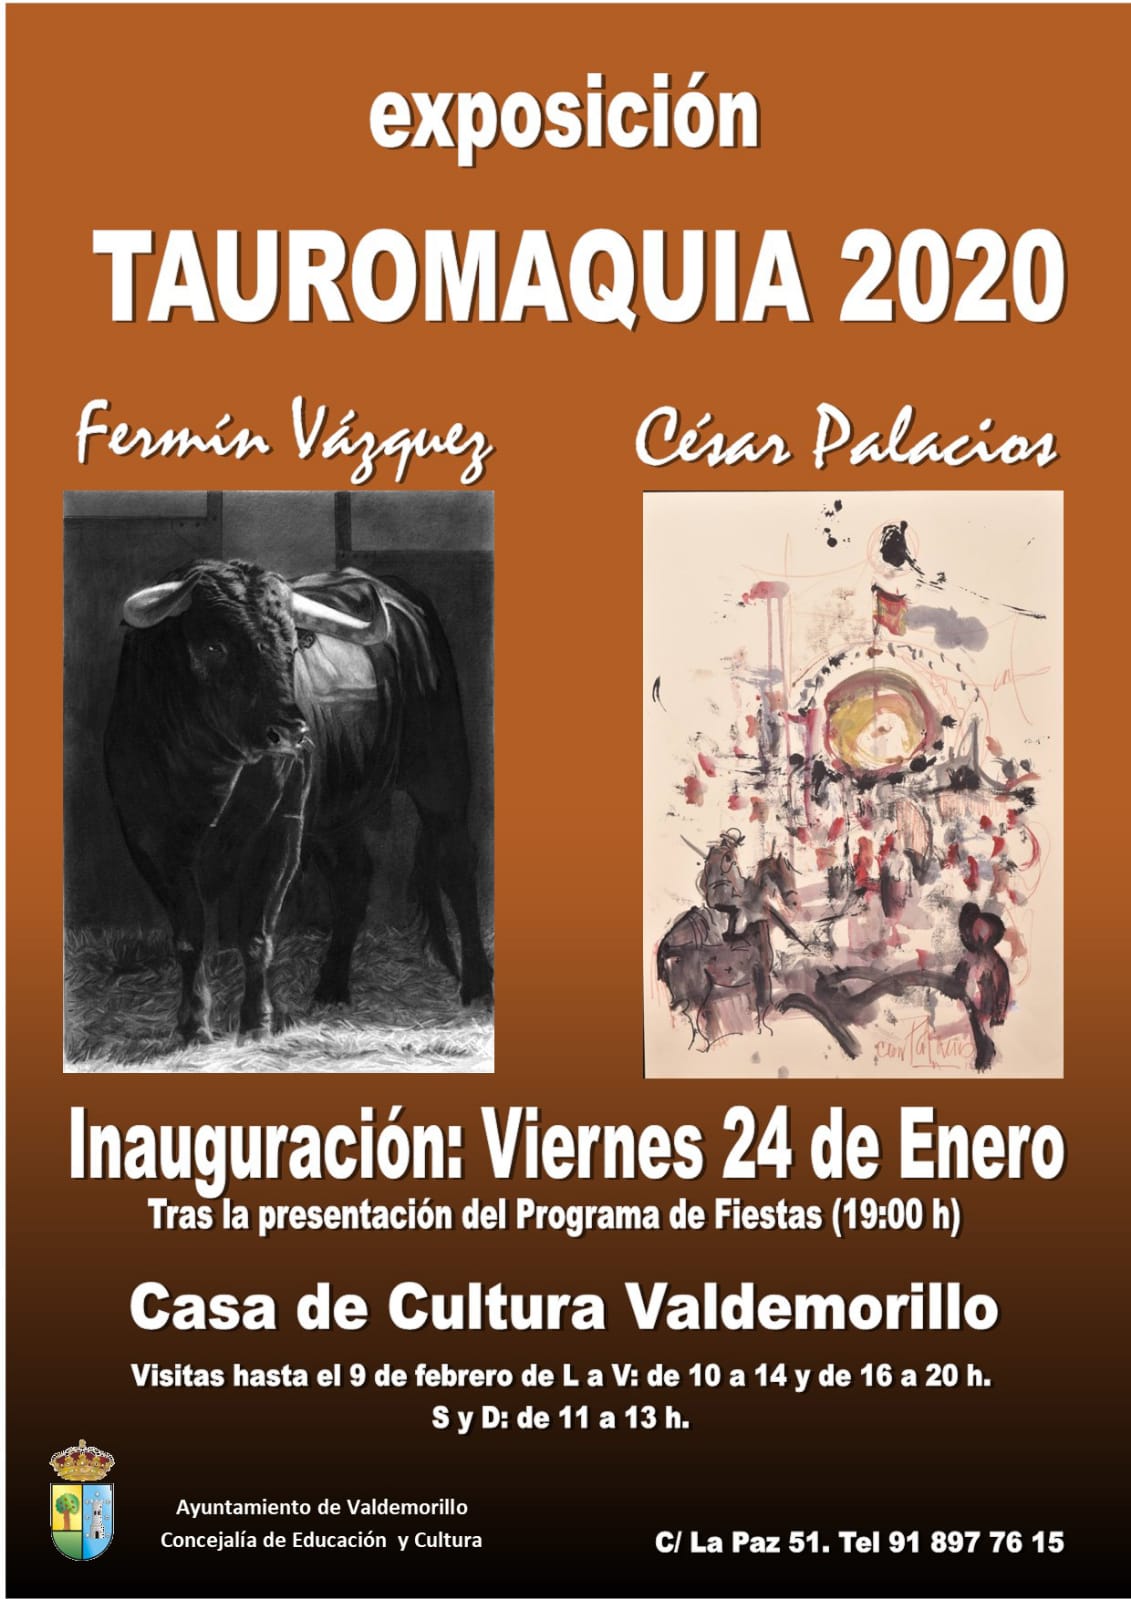 Valdemorillo proyecta su mirada a la Tauromaquia  en el arte de César Palacios y Fermín Vázquez,  casticismo y pasión por el toro junto a los detalles  más pintorescos en  una exposición para encontrarse con la Fiesta